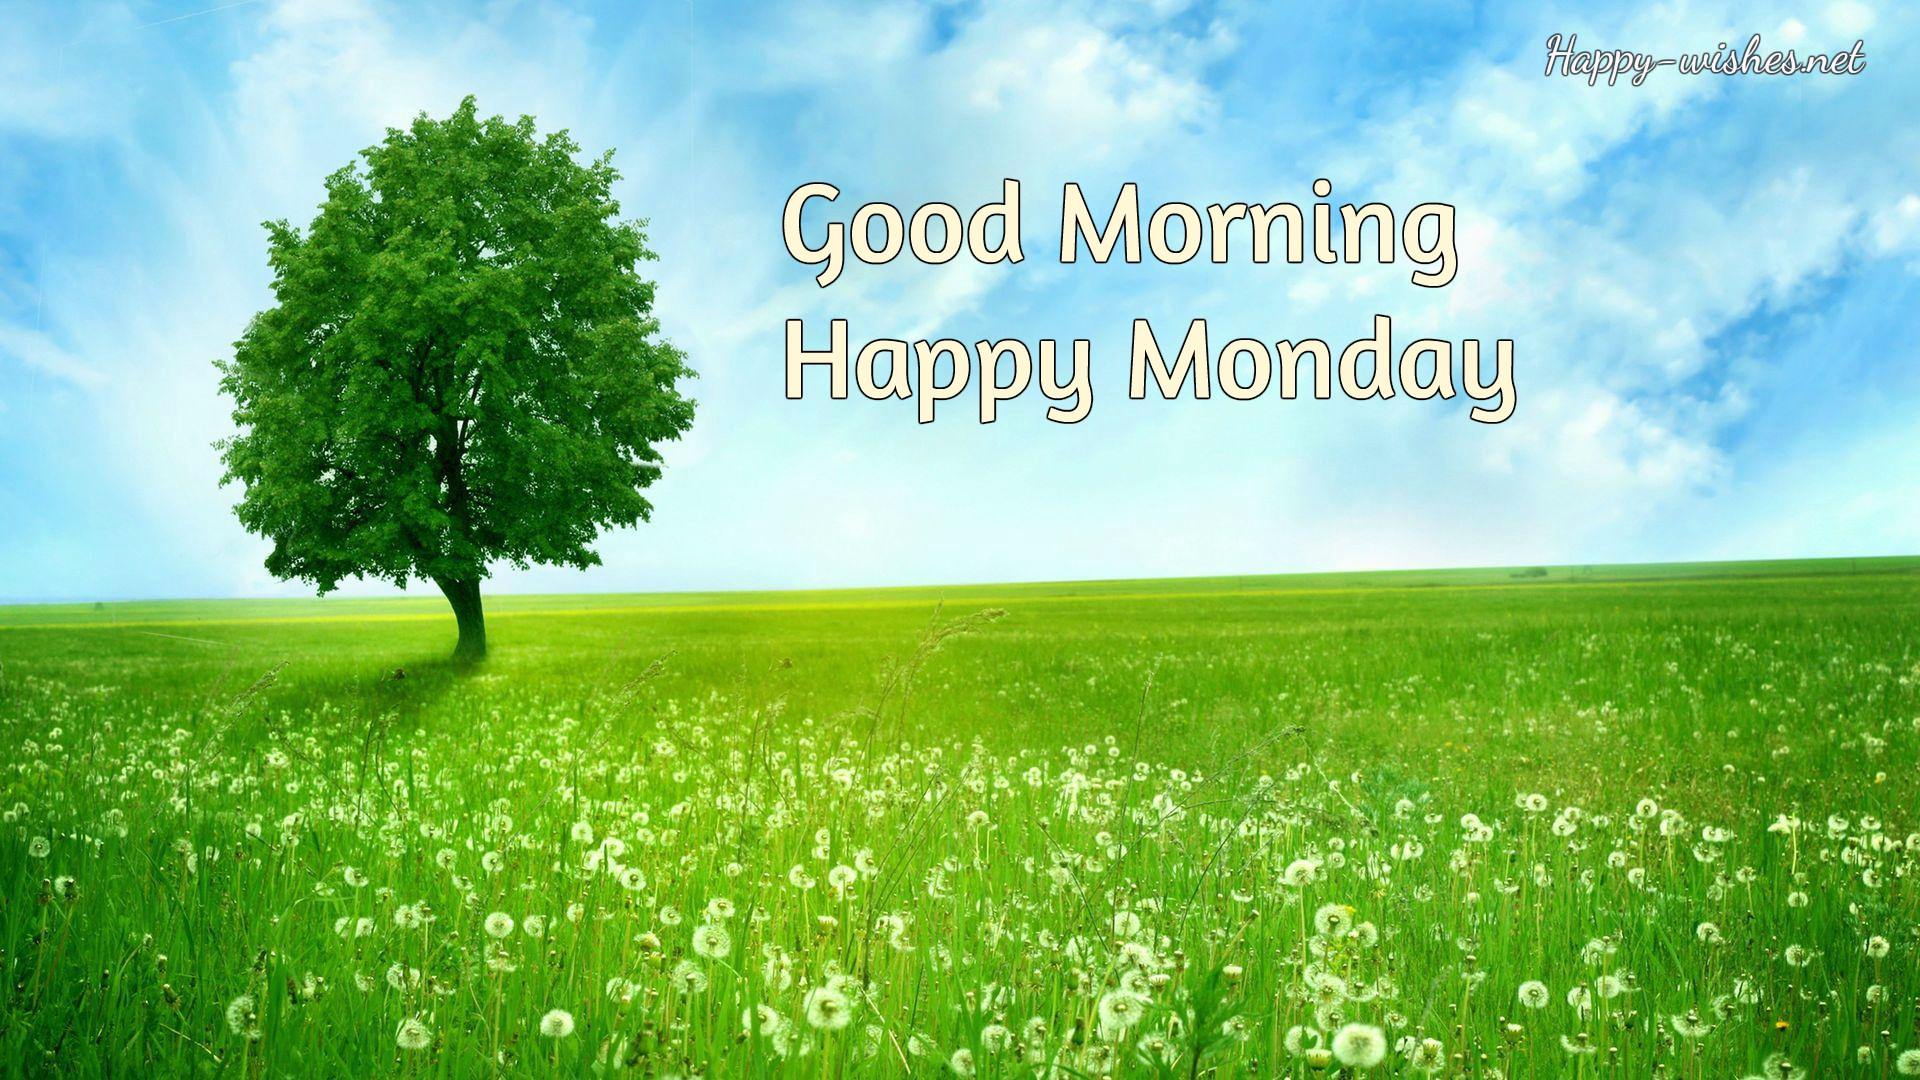 Happy Monday morning image